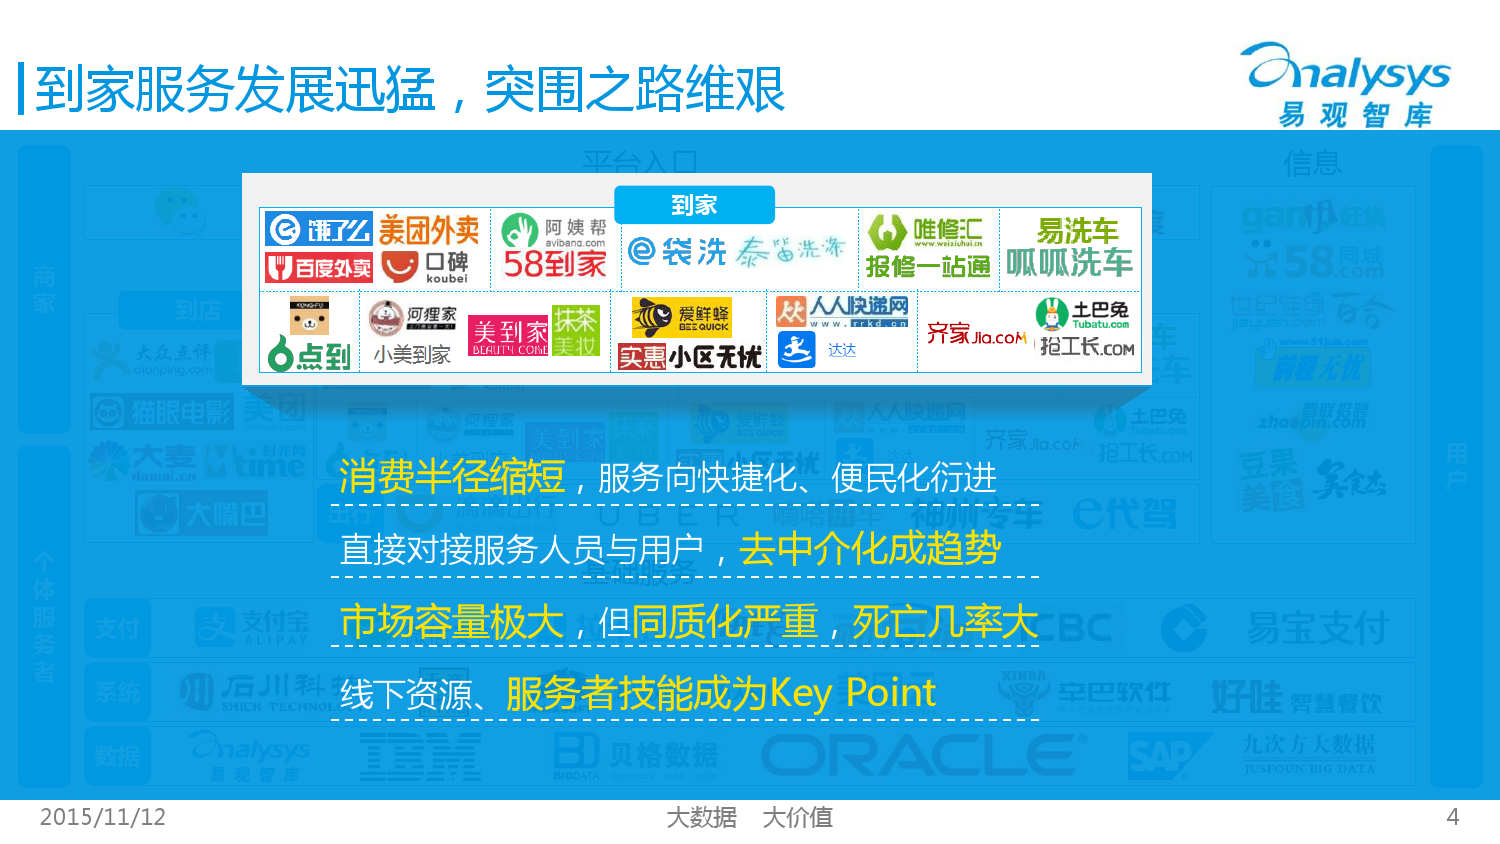 中国互联网生活服务市场生态图谱2015 01_000004